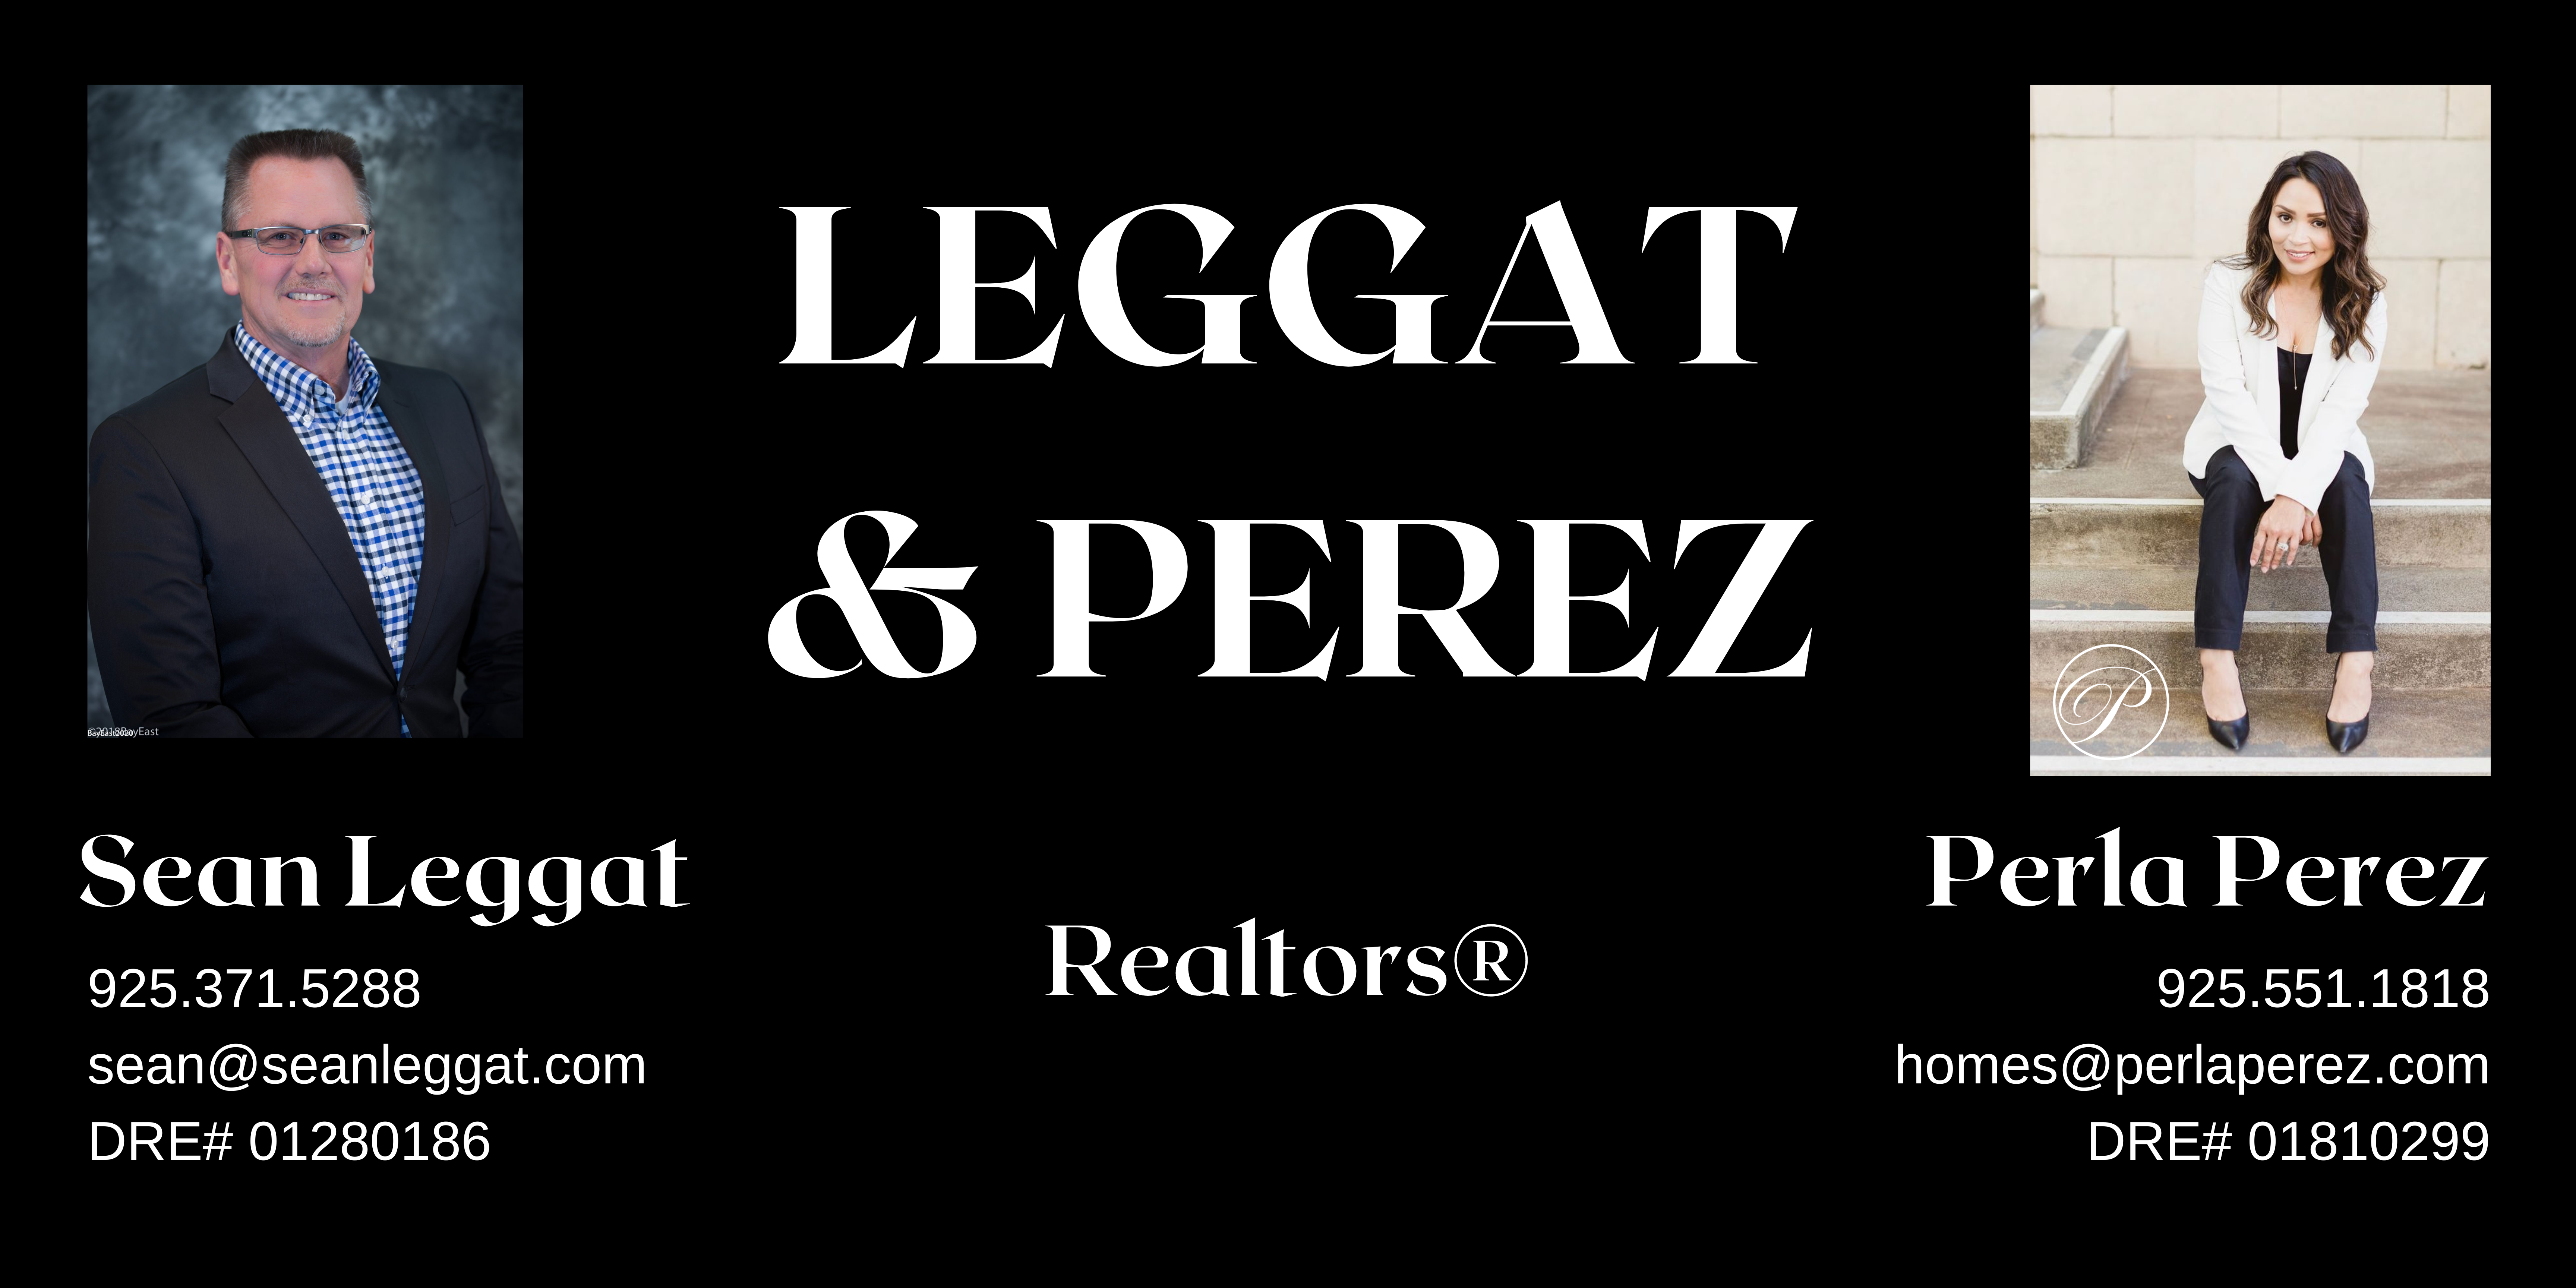 Leggat & Perez